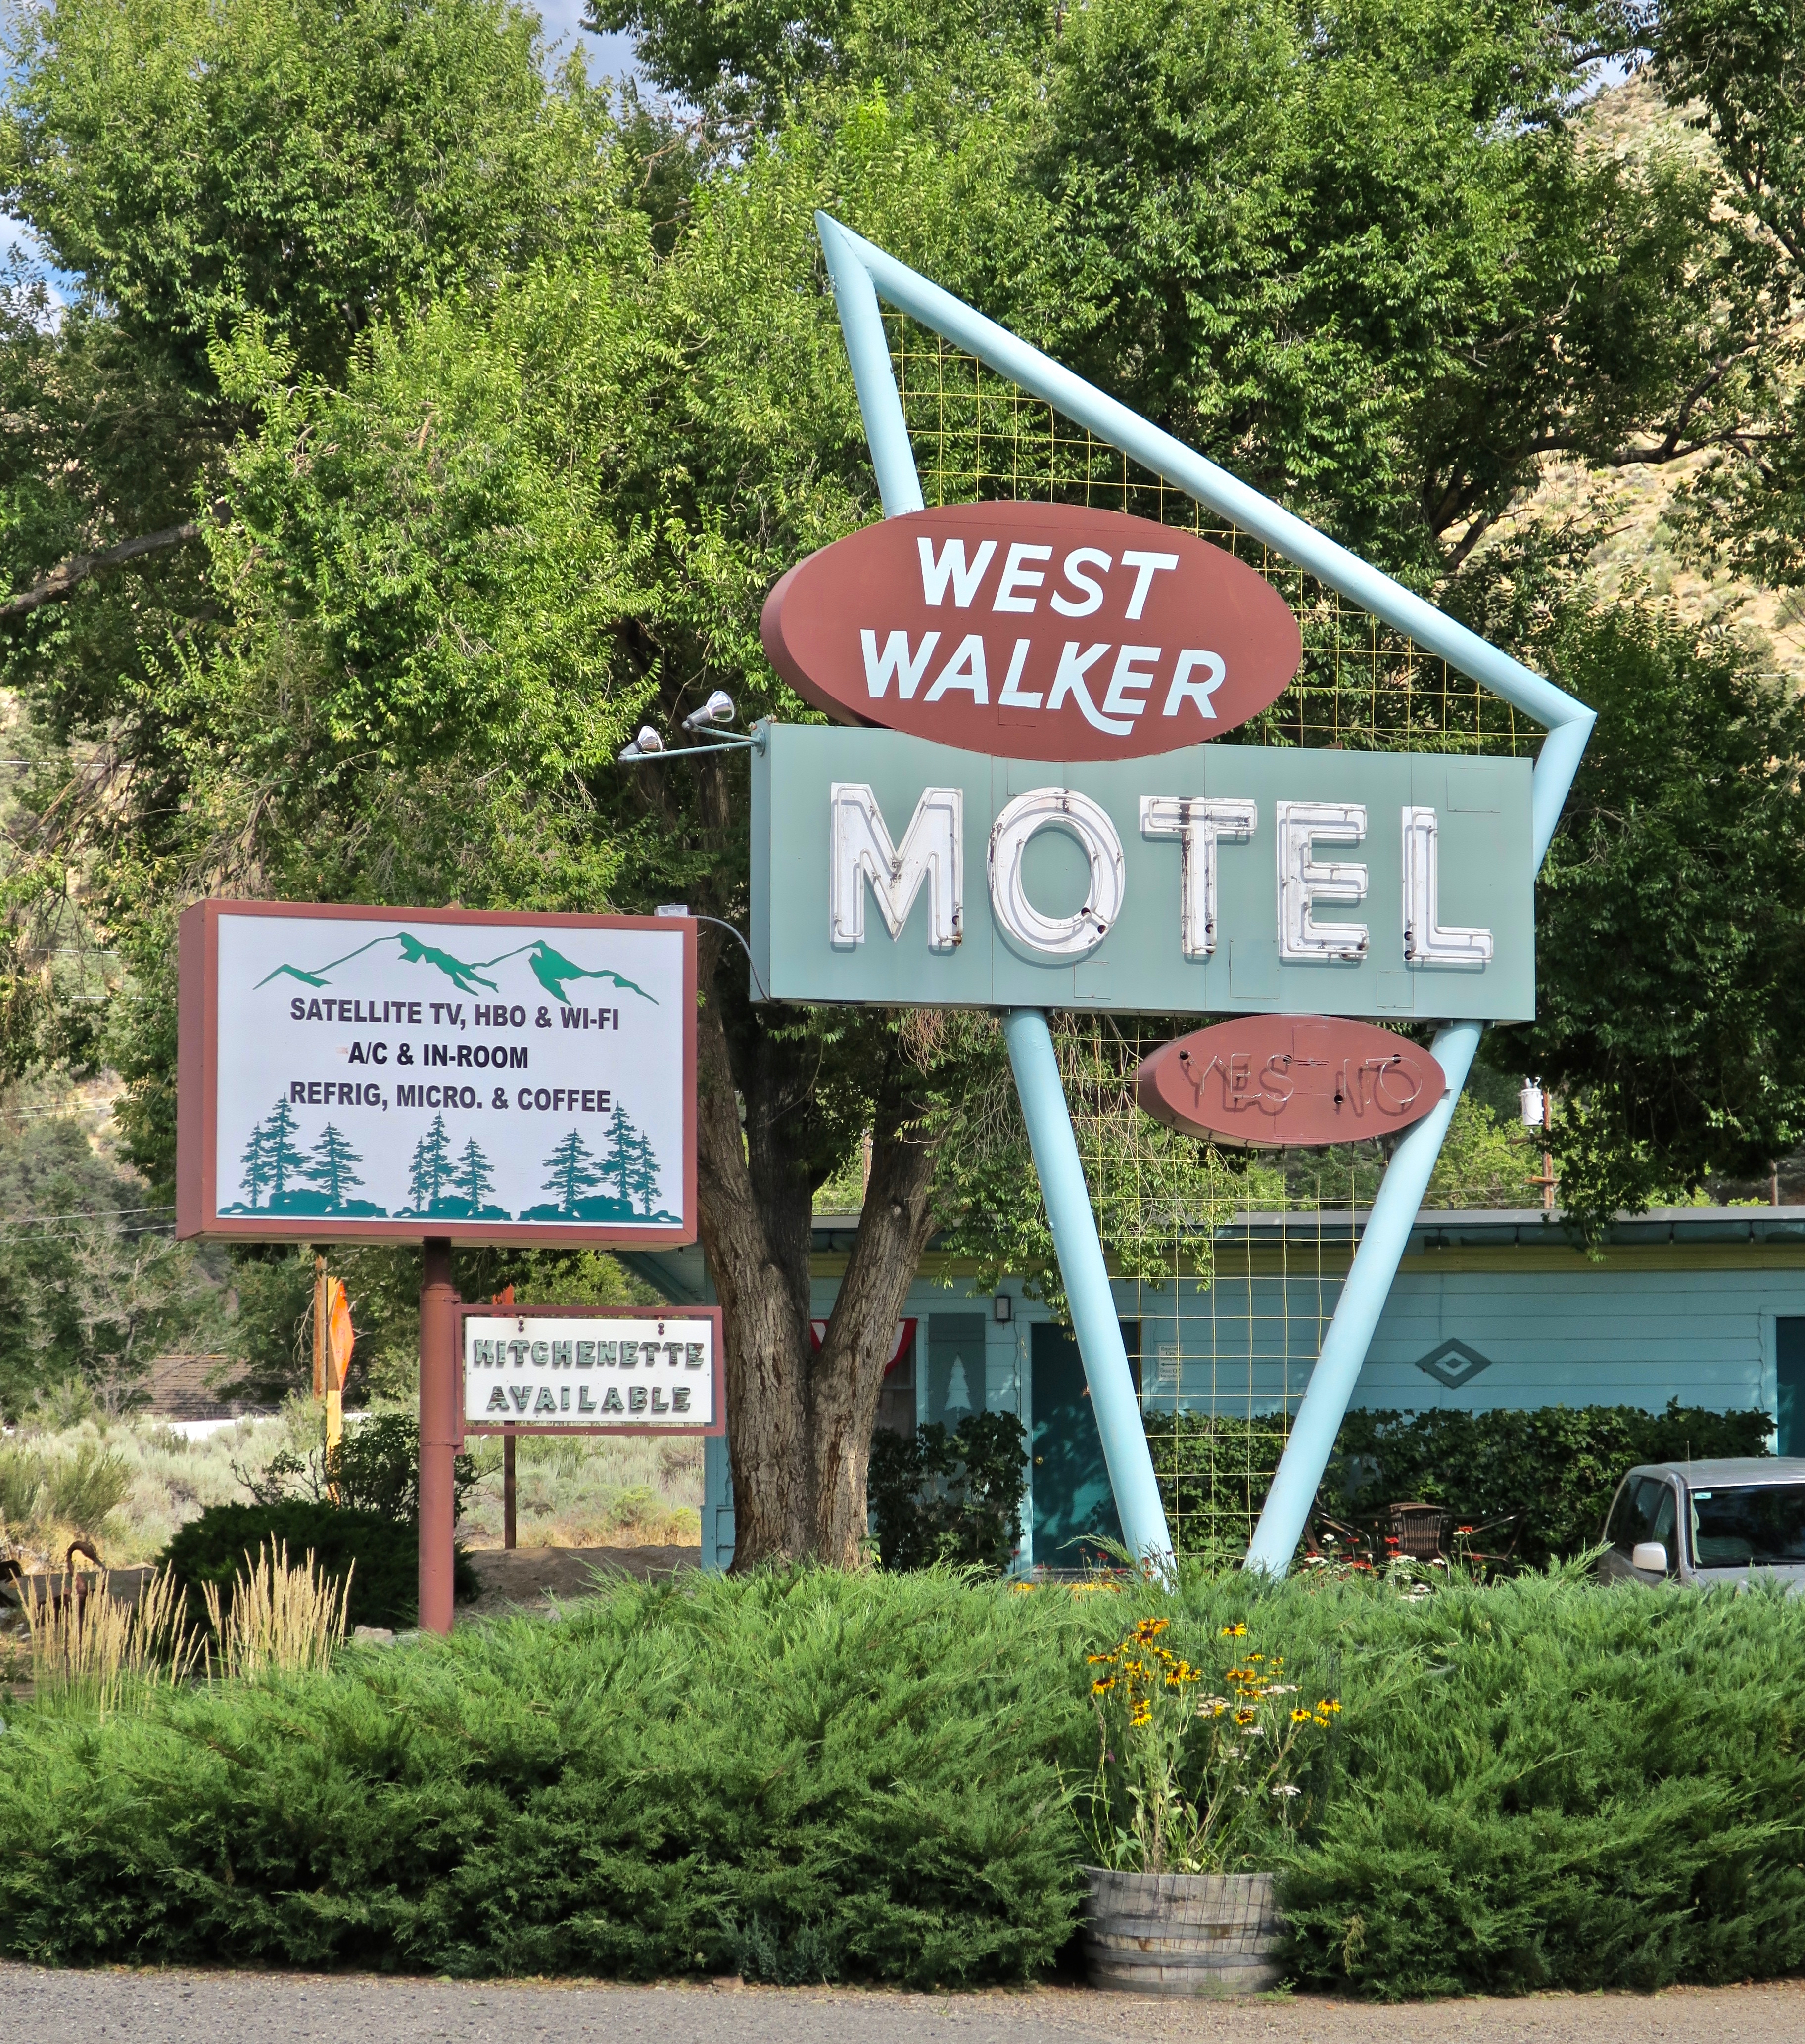 West Walker Motel - 106833 U.S. Highway 395, Walker, California U.S.A. - July 28, 2017